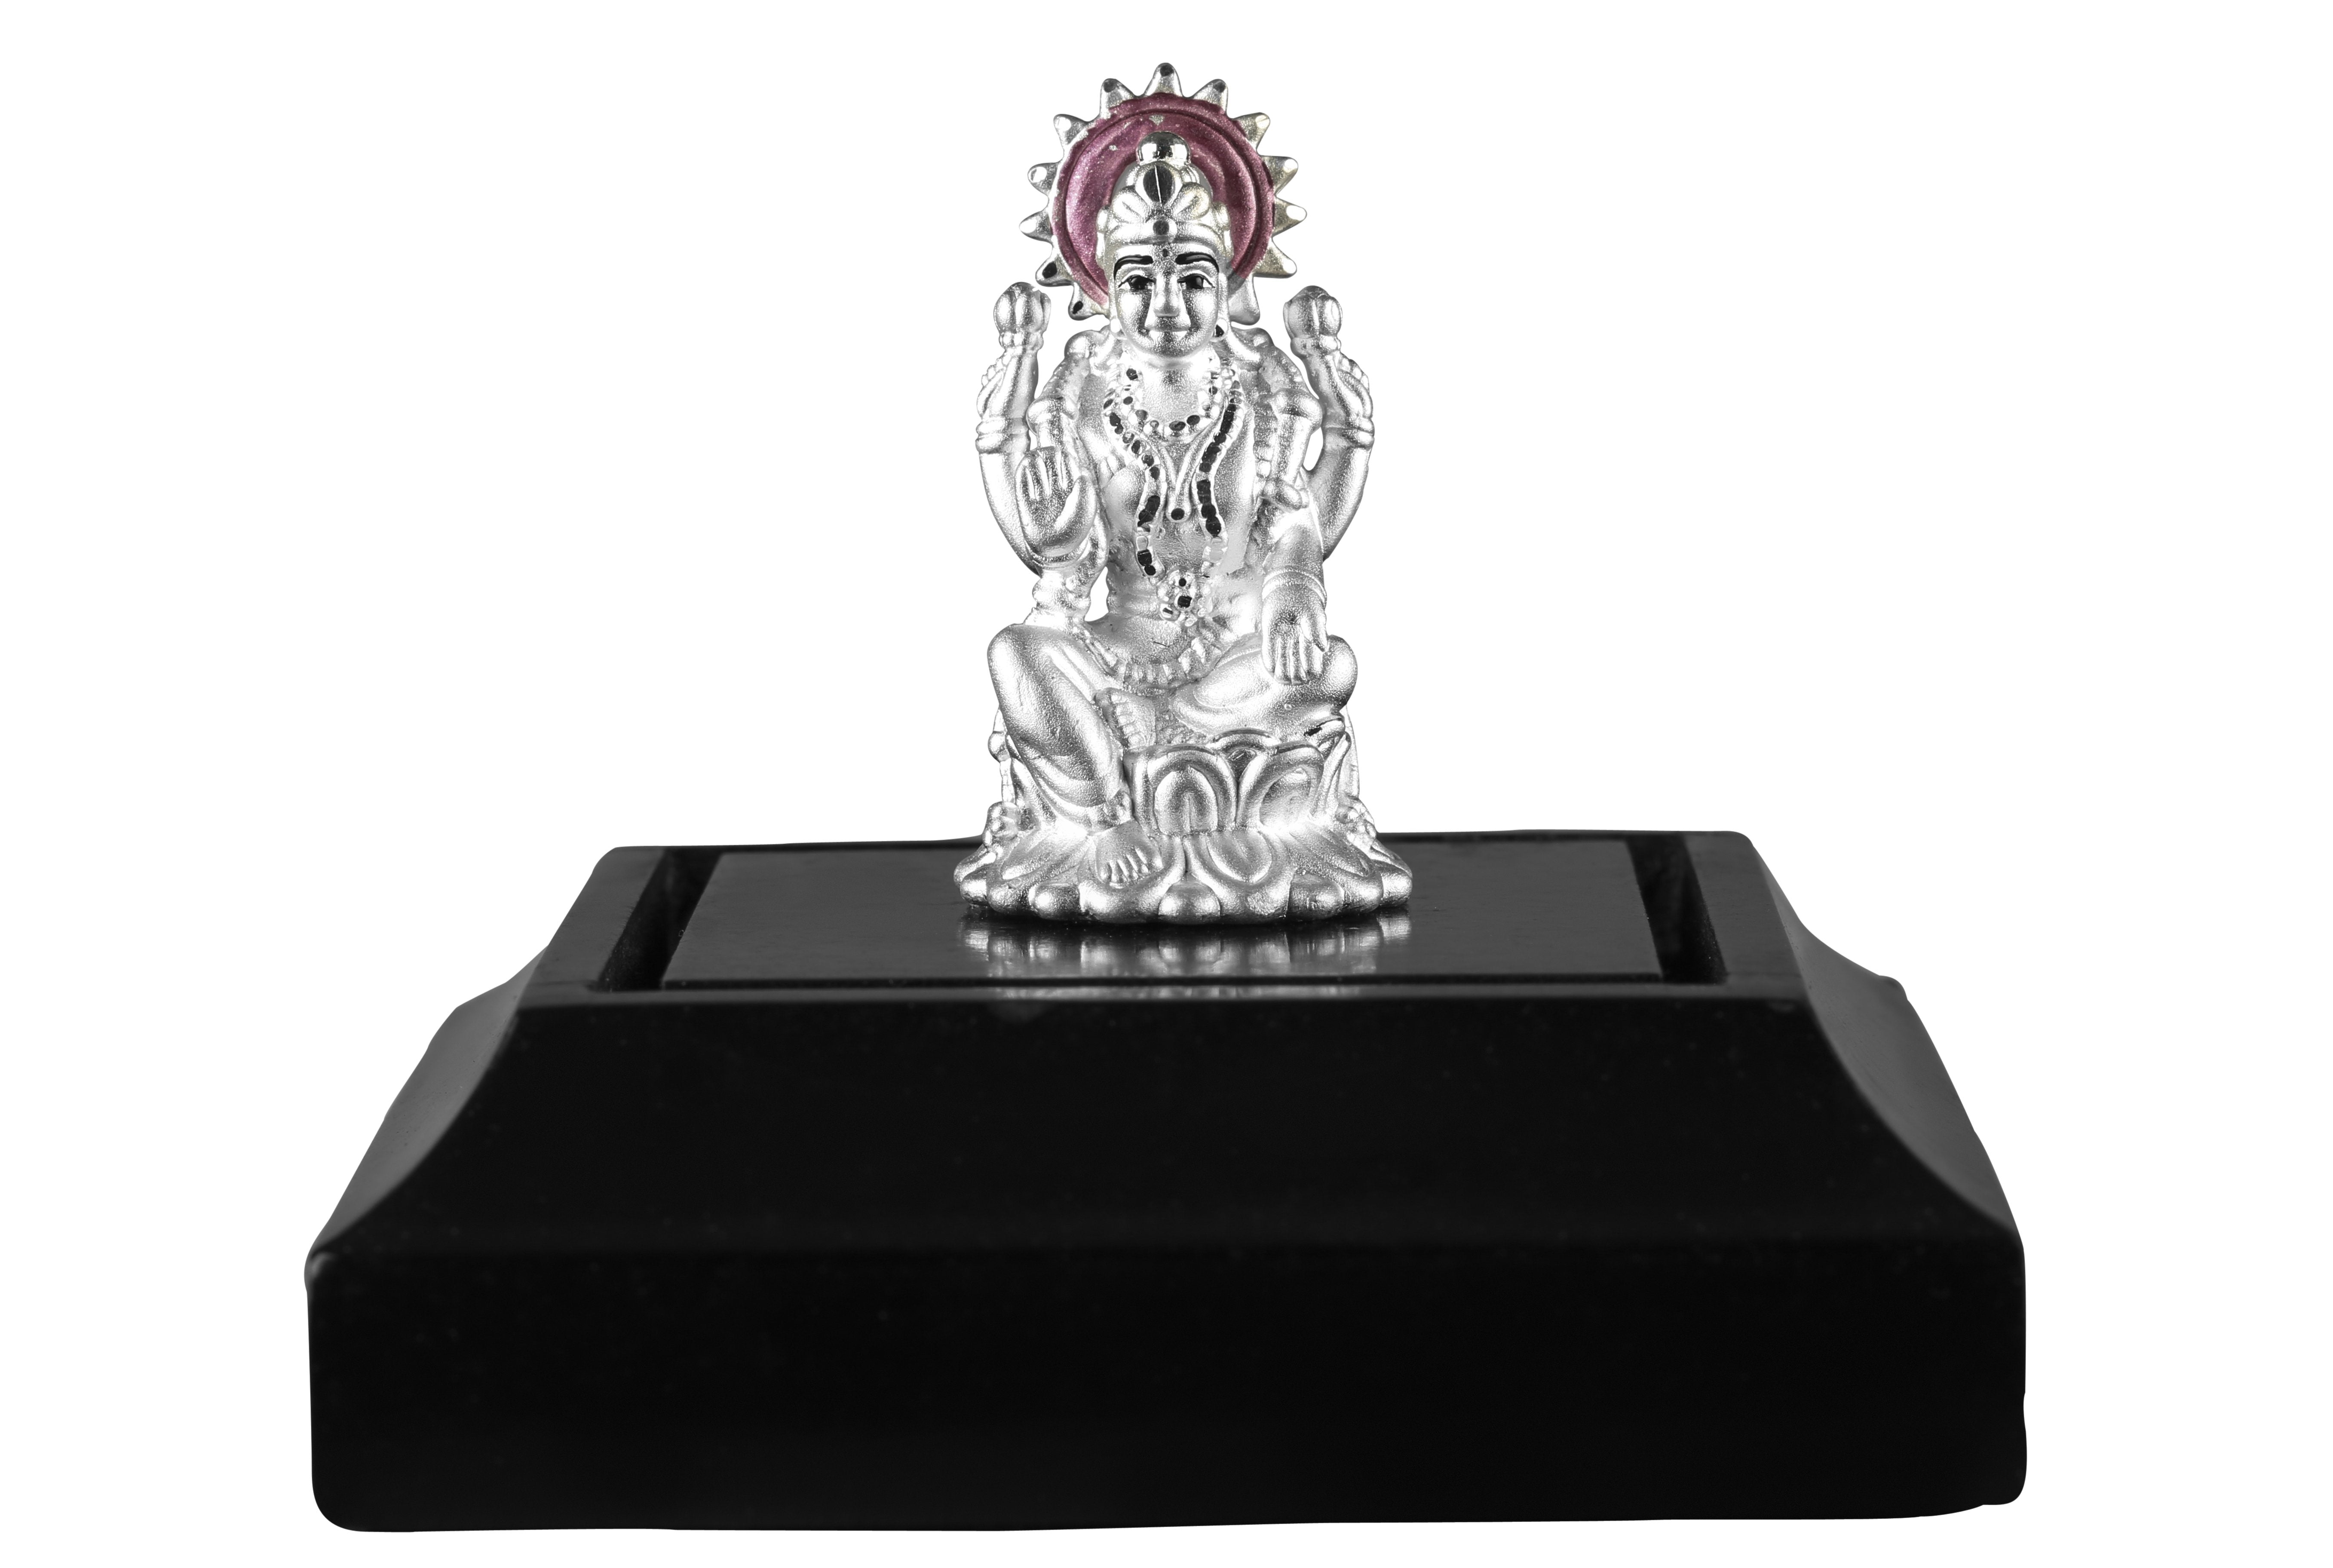 999 Pure Silver Goddess Laxmi Idol By Krysaliis Isvara-Krilx_Ms09 Idols